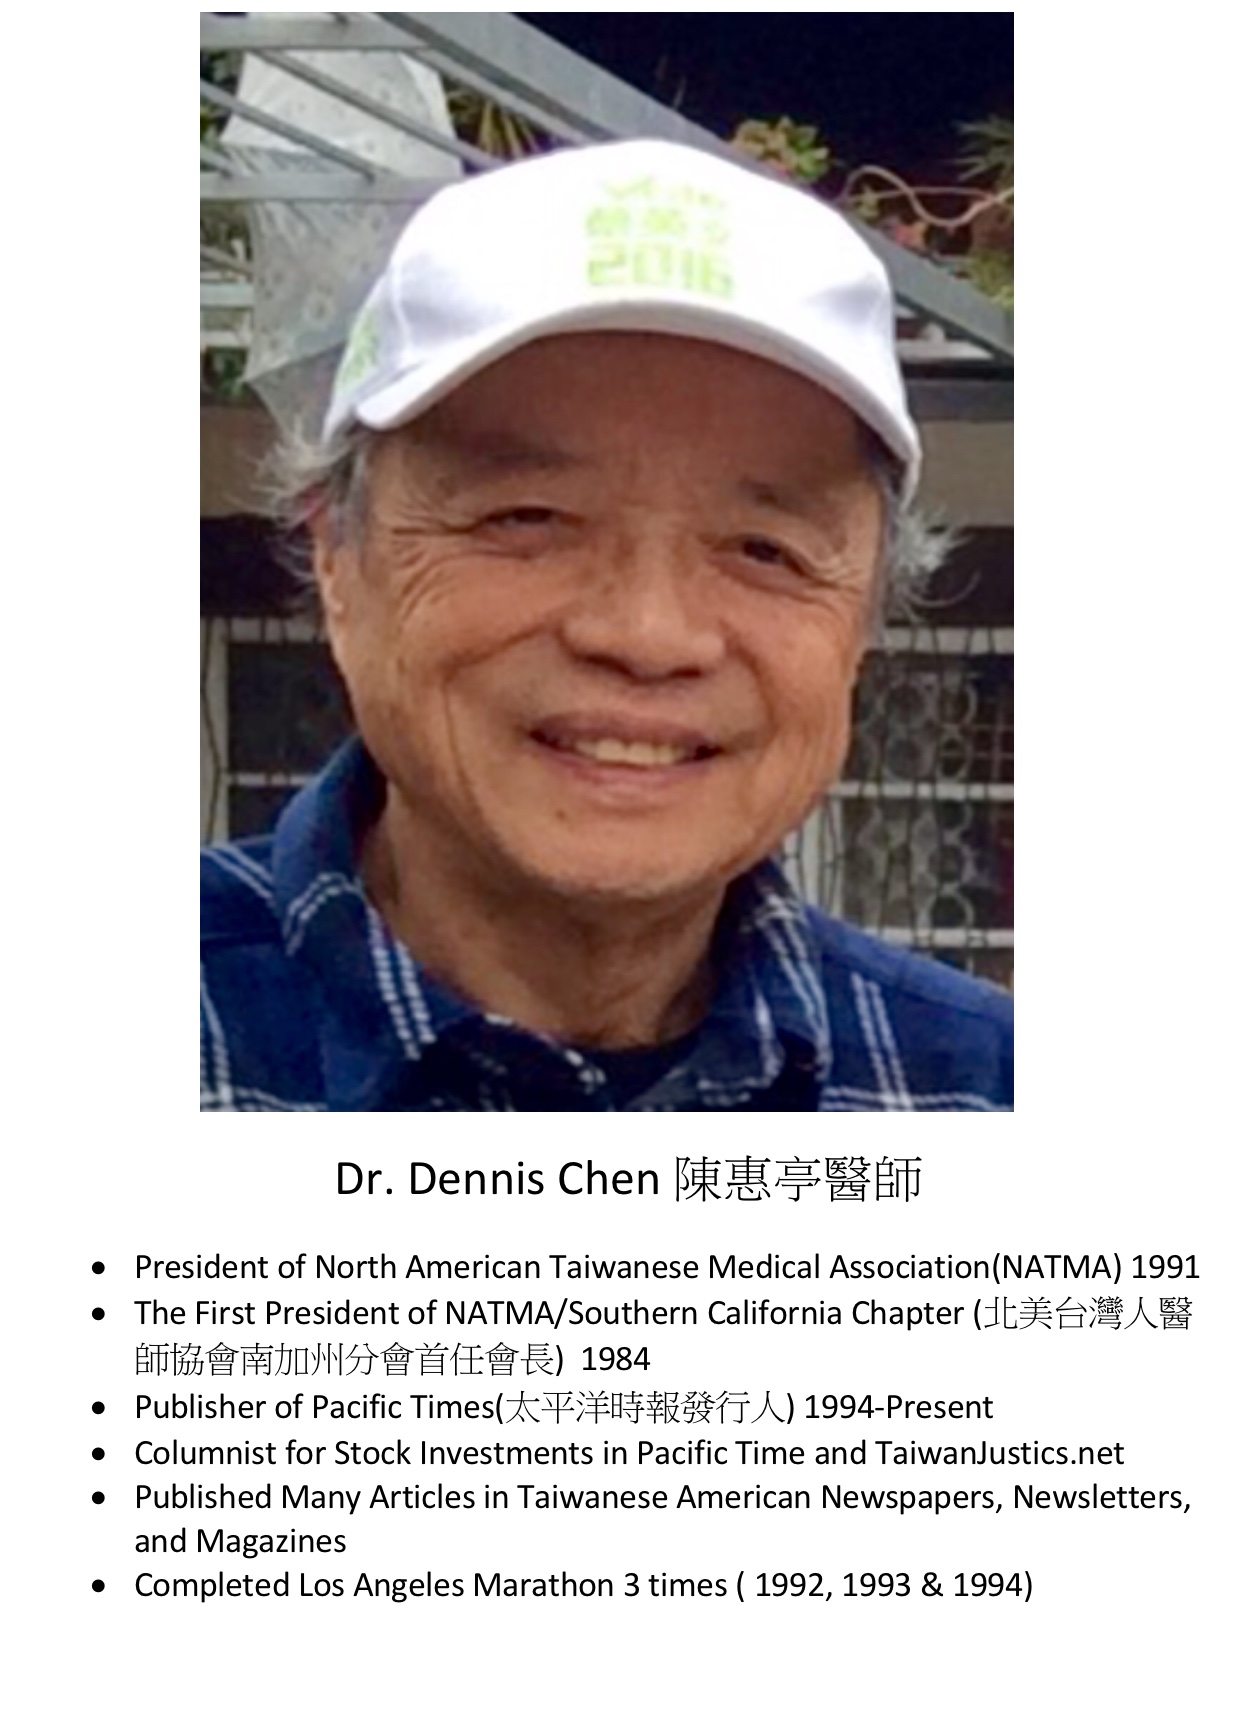 291. Dr. Dennis Chen 陳惠亭醫師